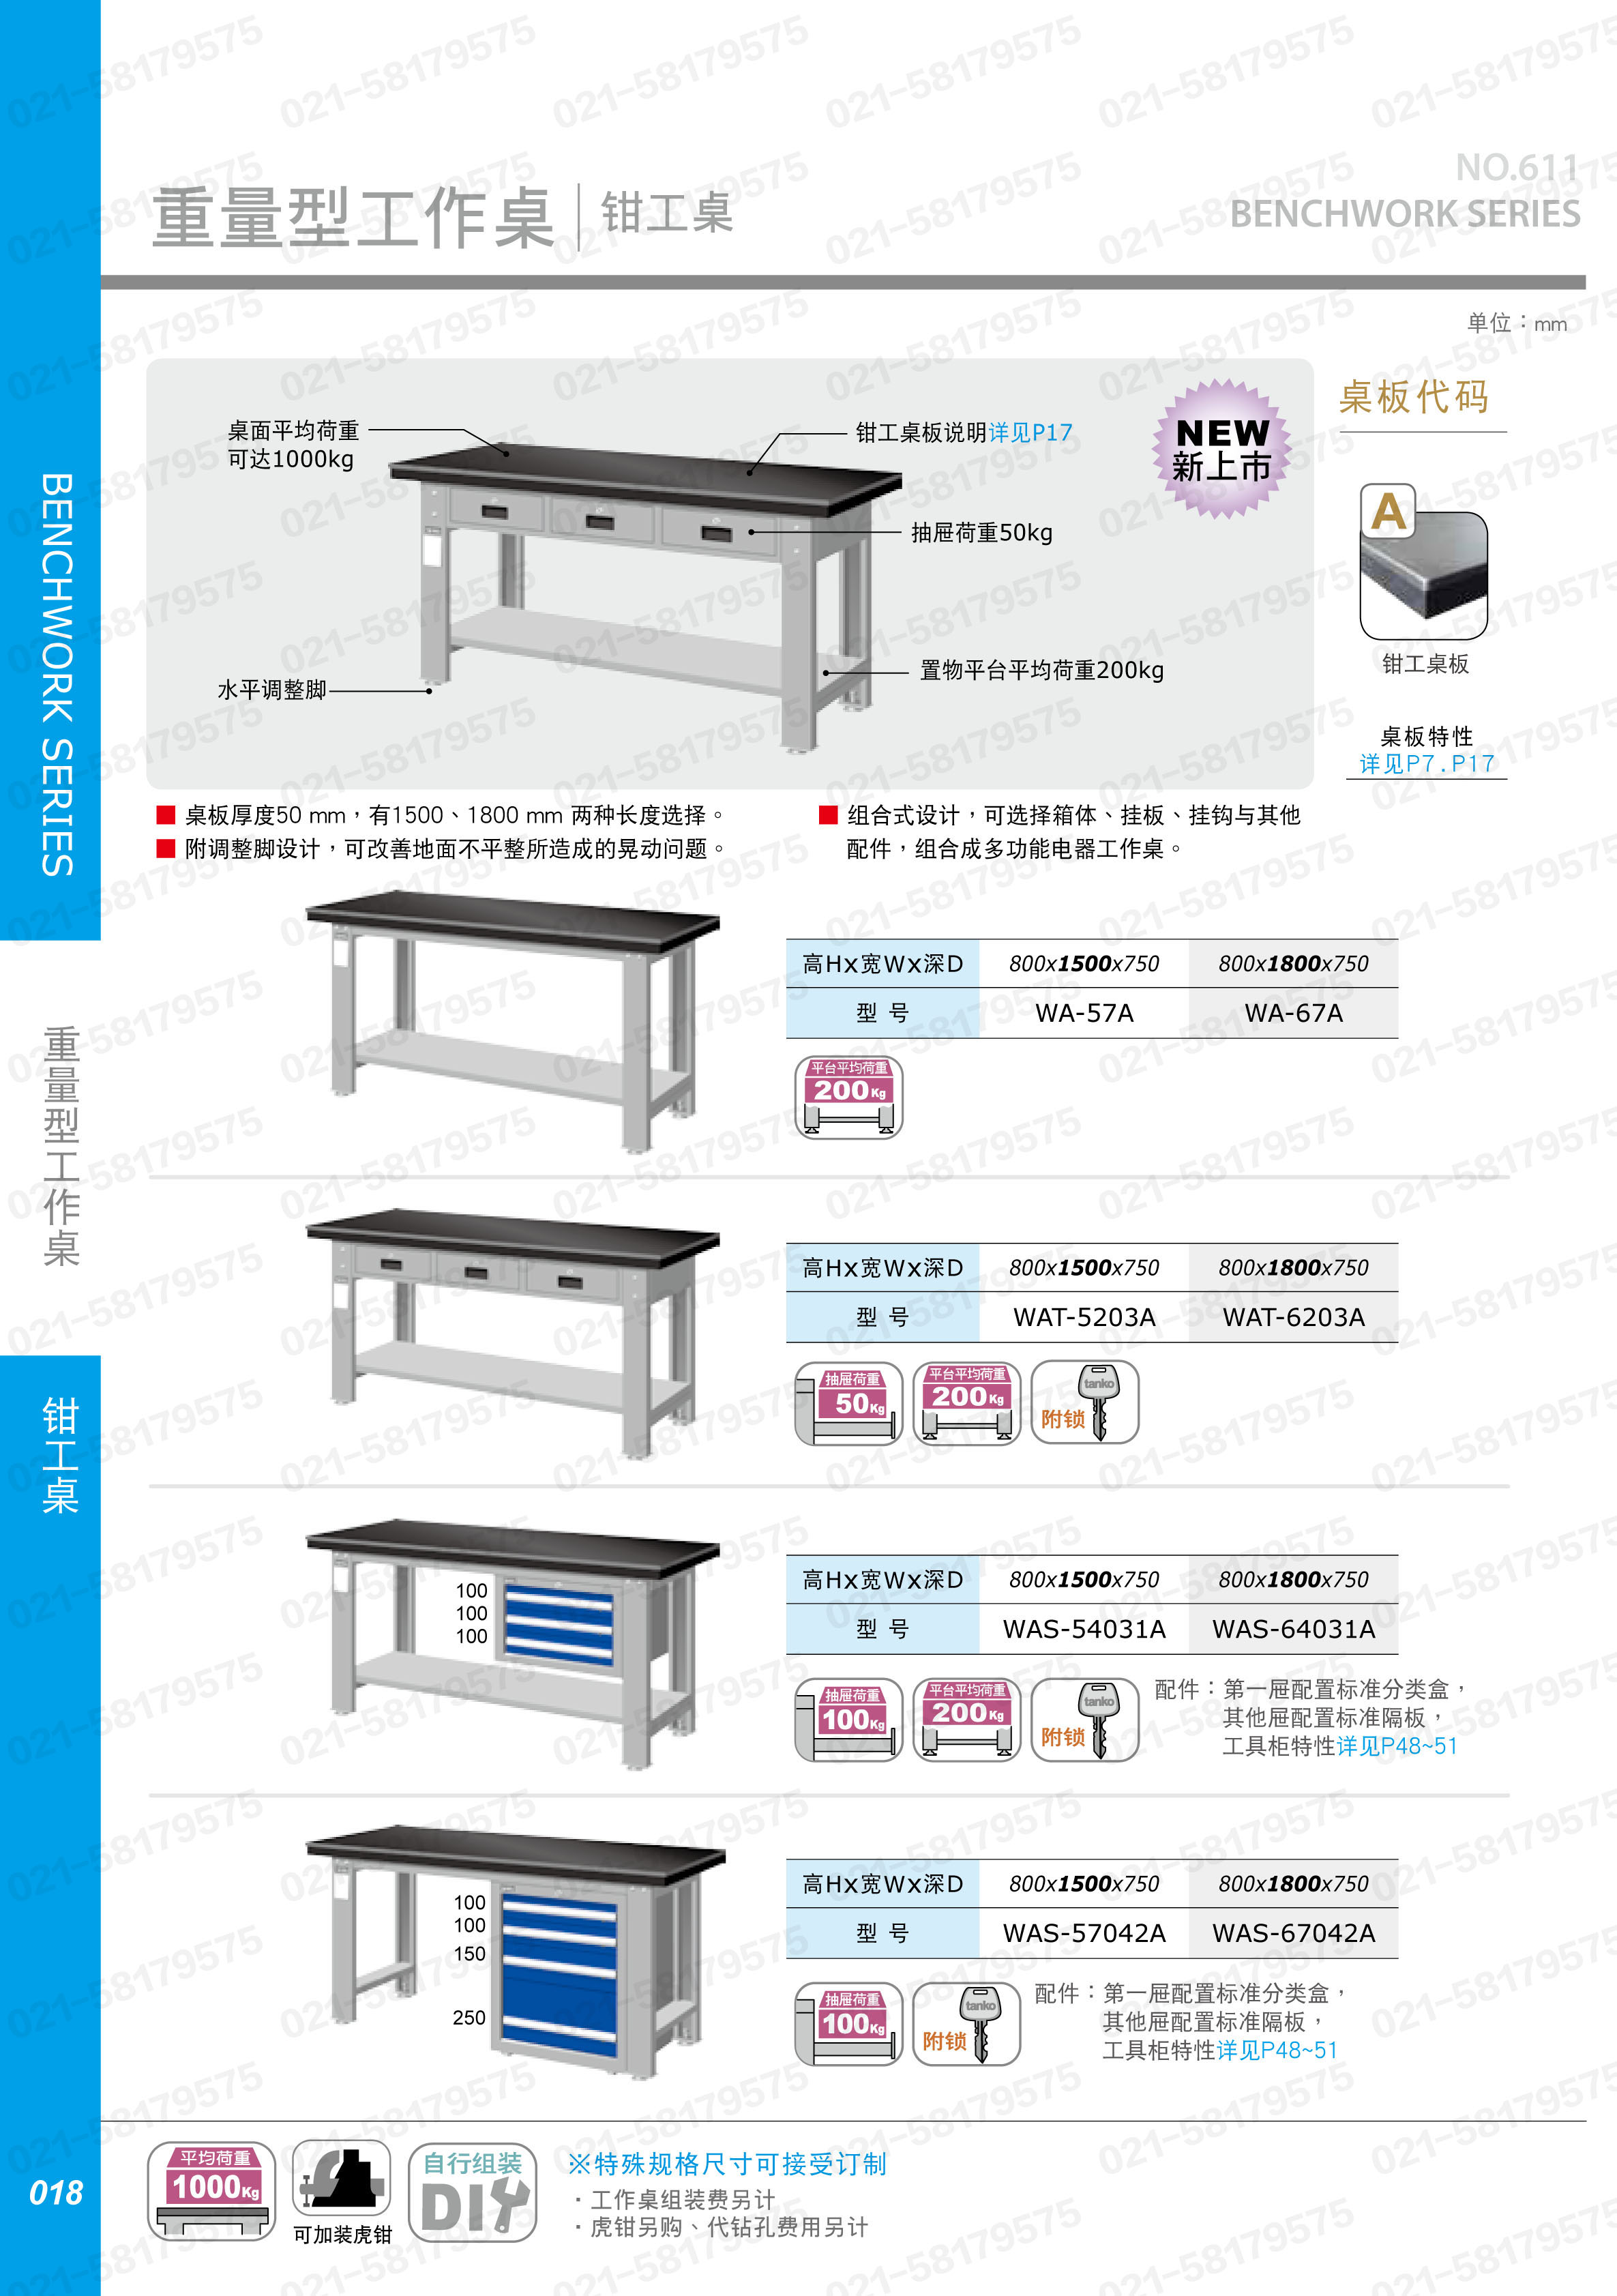 重型工作桌1500×750×800mm平均承重1吨耐磨桌板 横置3个抽屉,WAT-5203F,3M0879